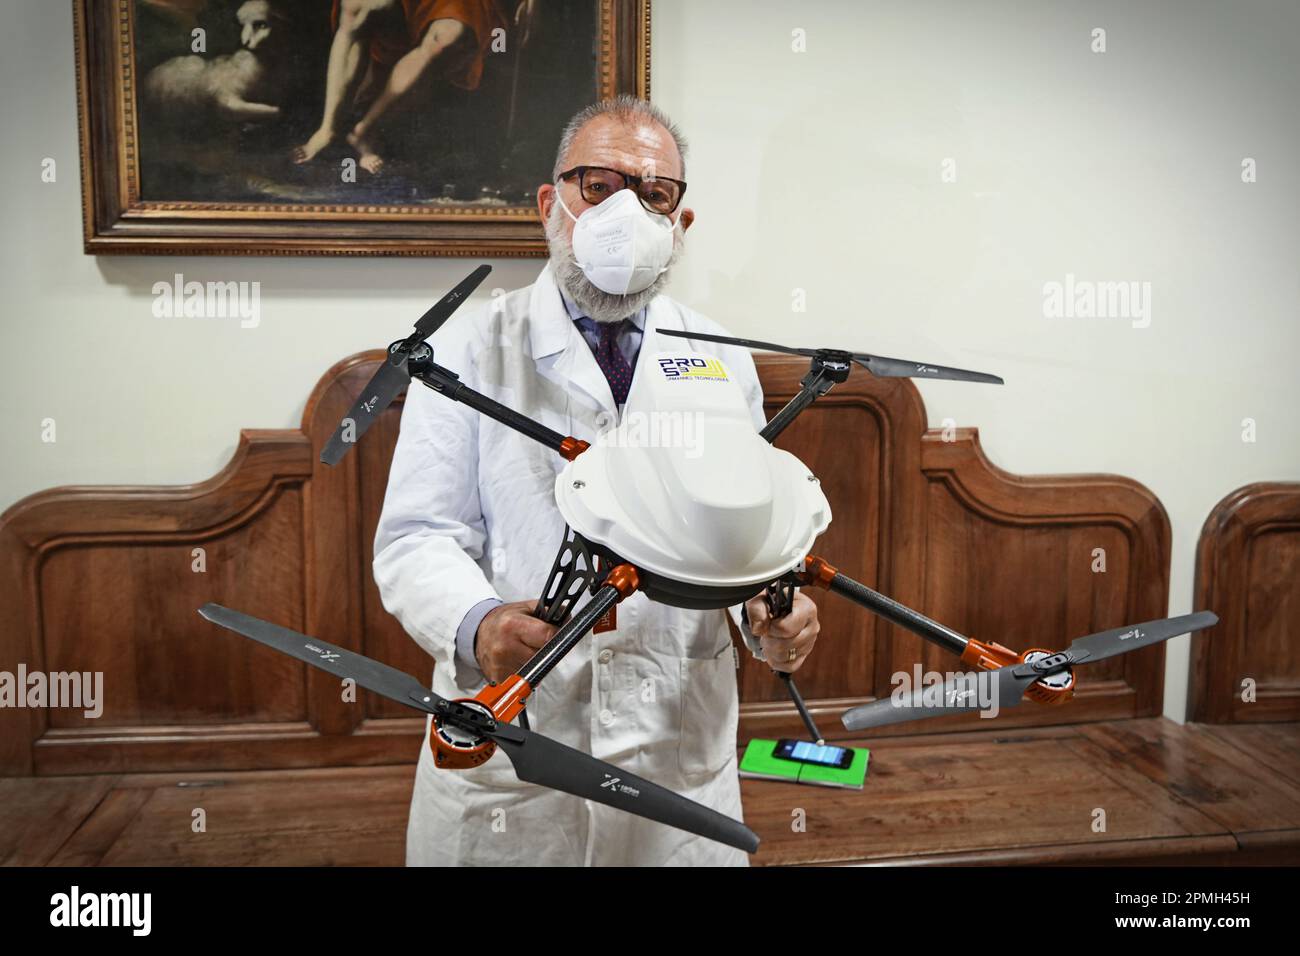 Médecin avec un drone utilisé dans les soins de santé, spécialement conçu pour transporter du matériel biologique et des organes pour la transplantation. Turin, Italie - 20 avril Banque D'Images